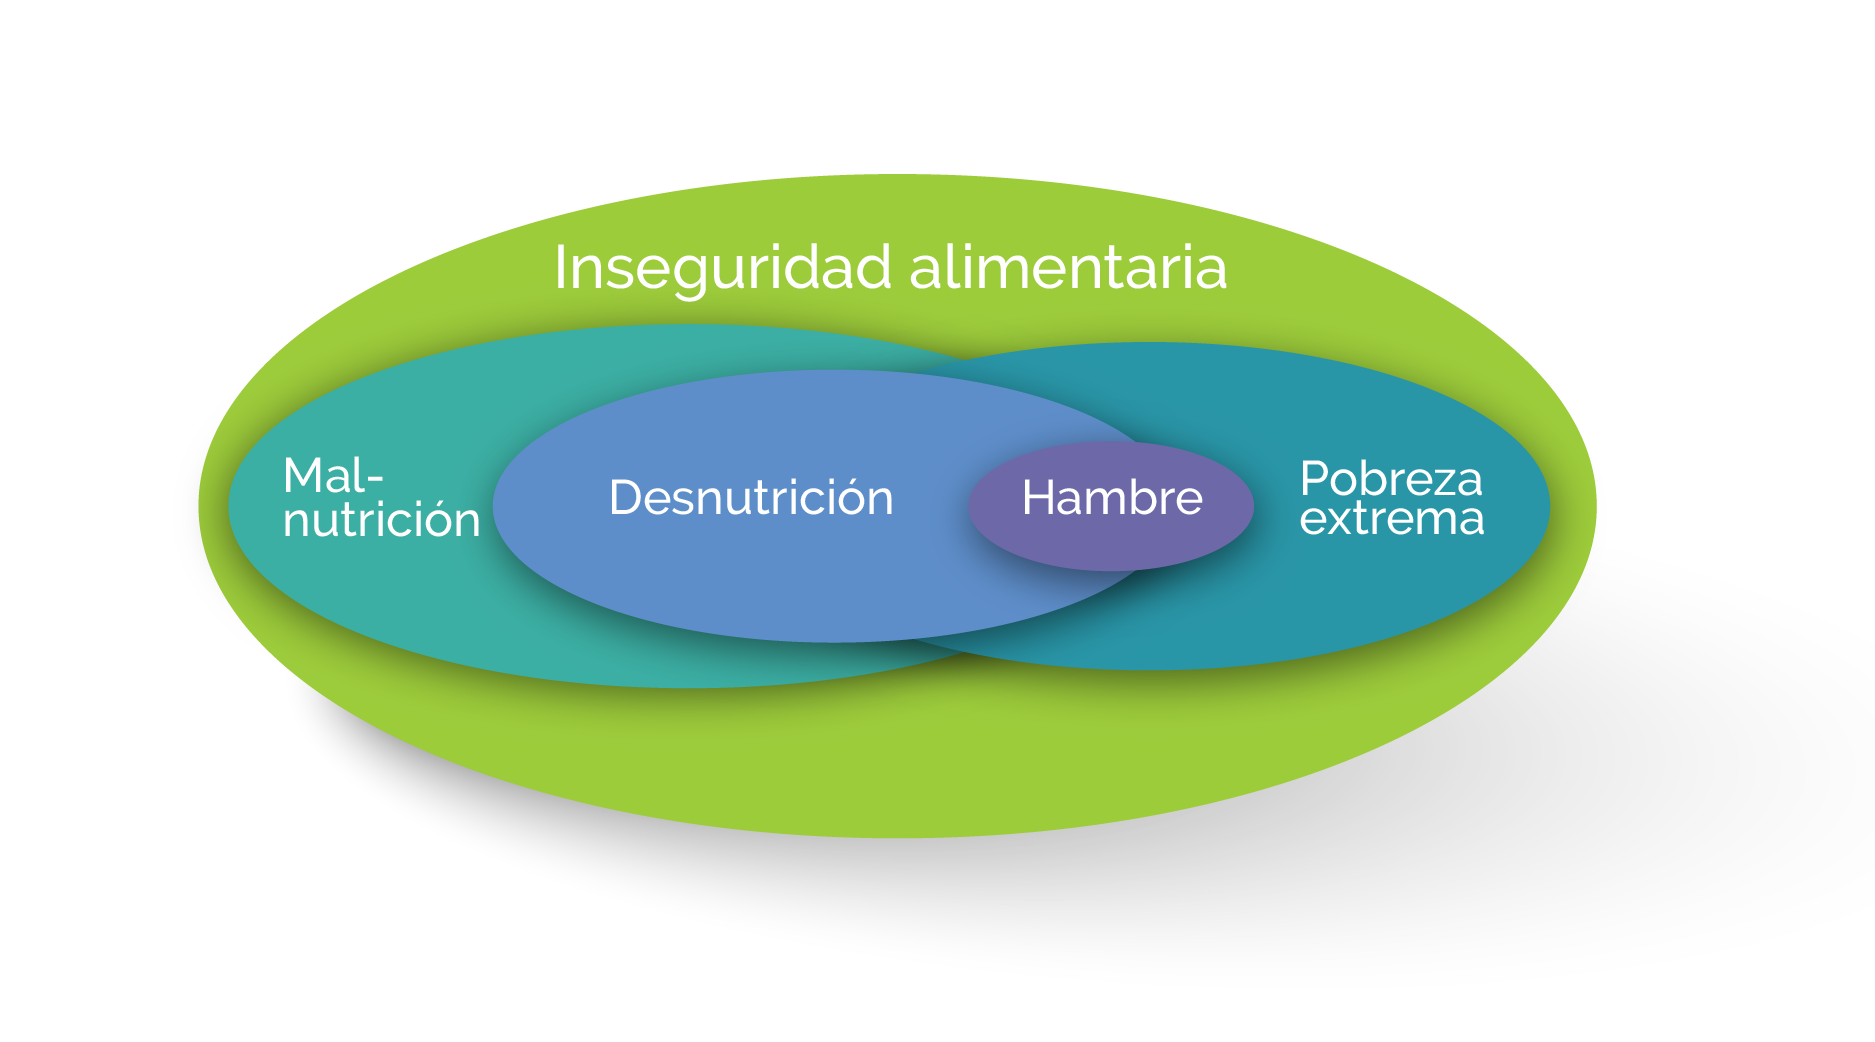 Diagrama inseguridad alimentaria